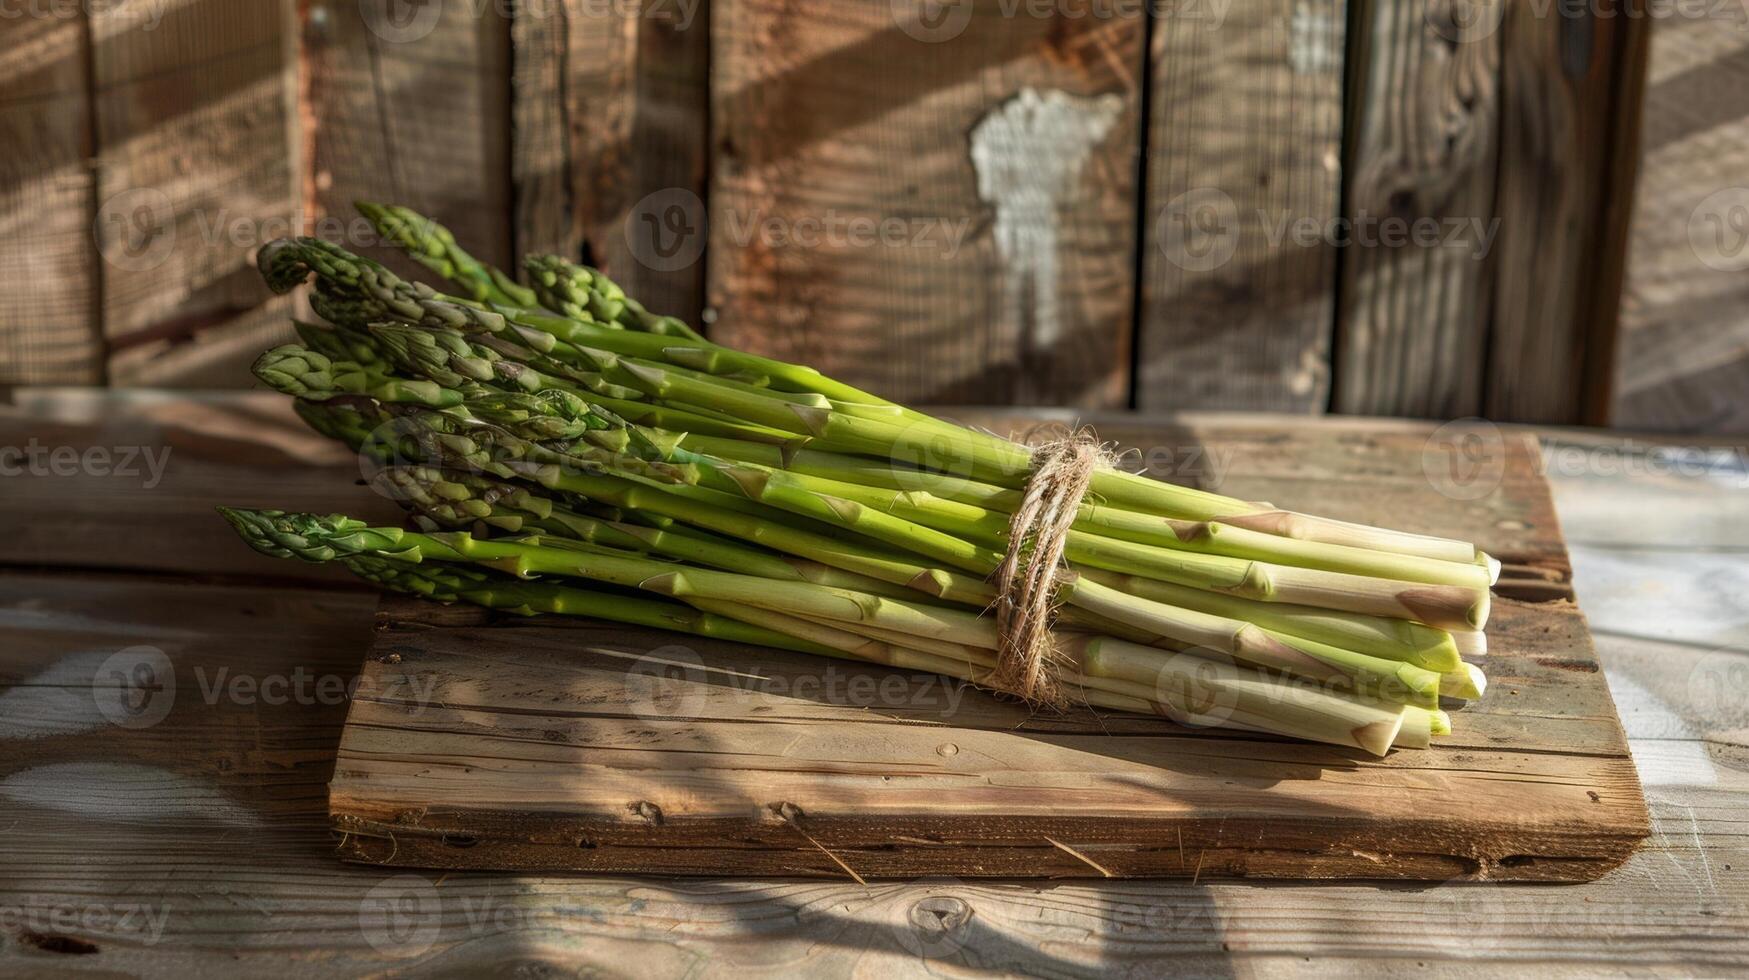 biologico asparago fascio su anziano Di legno, mattina leggero calchi morbido ombre foto